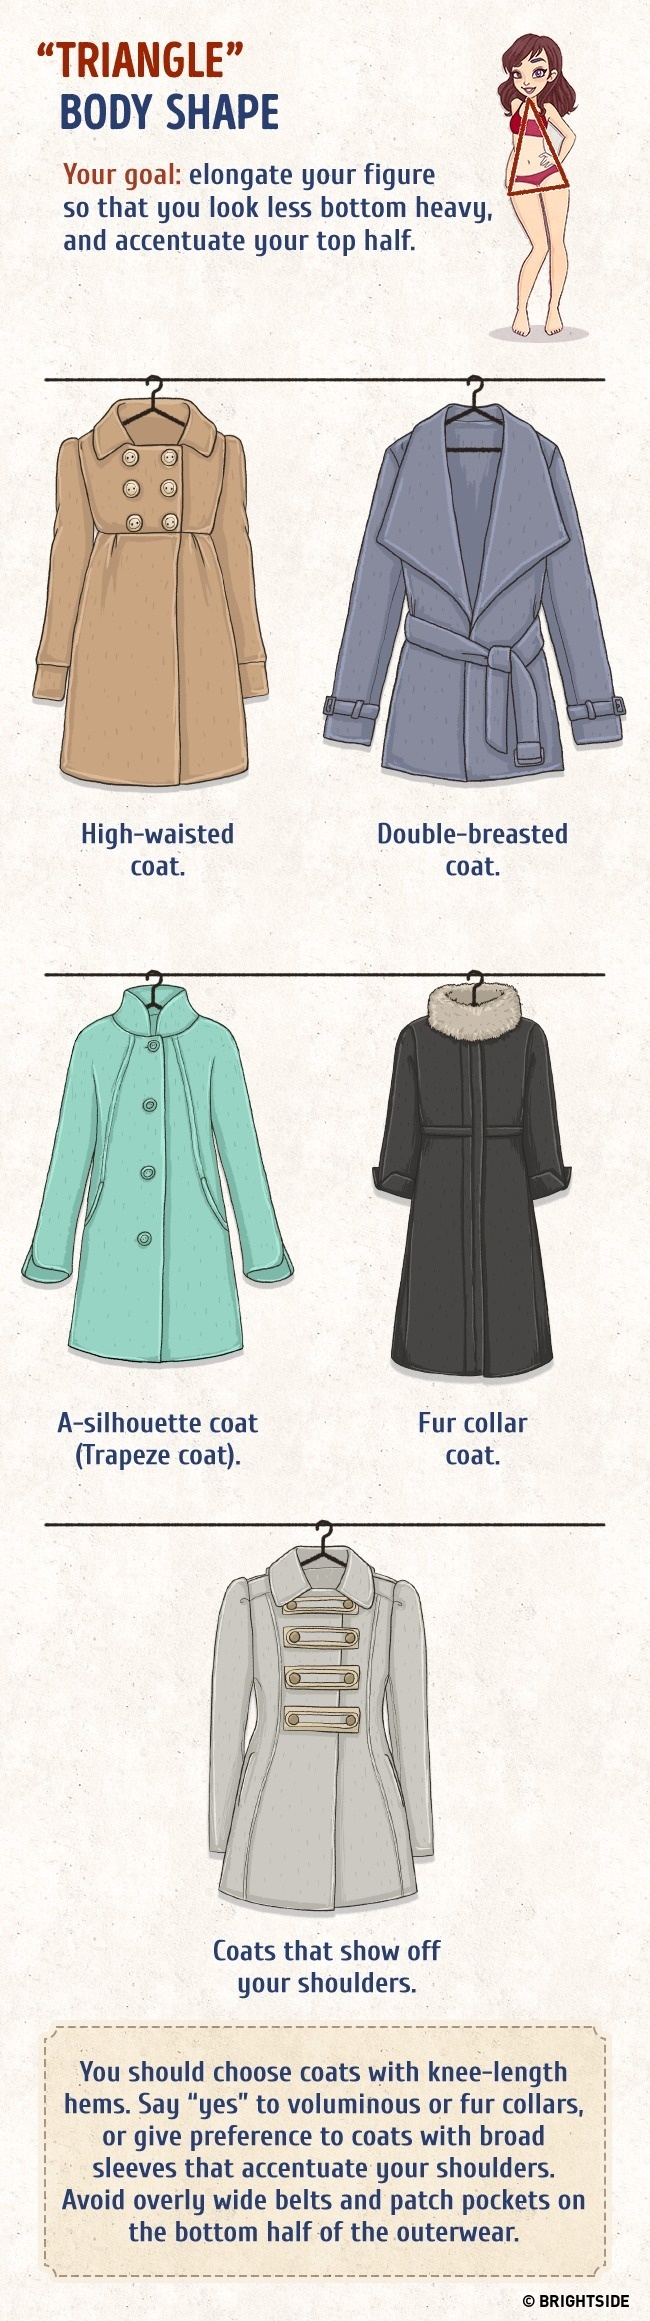 Odaberi savršeni kaput prema svojoj građi3 Odaberi savršeni kaput prema svojoj građi